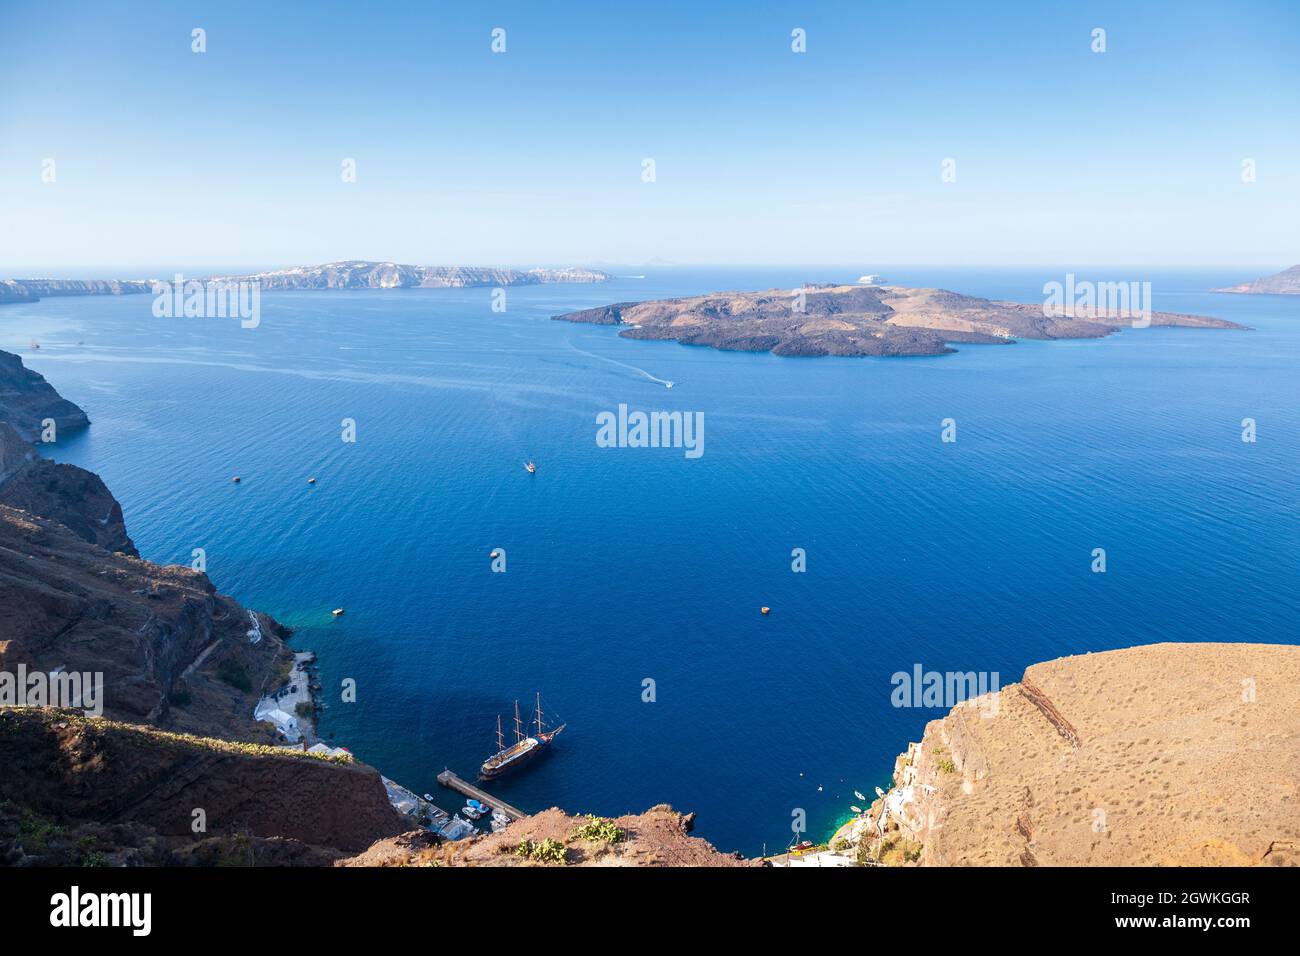 Isola di Santorini, vista panoramica della magnifica caldera e delle isole vulcaniche di Nea Kameni e Palia Kameni. Nelle isole Cicladi, Grecia Foto Stock